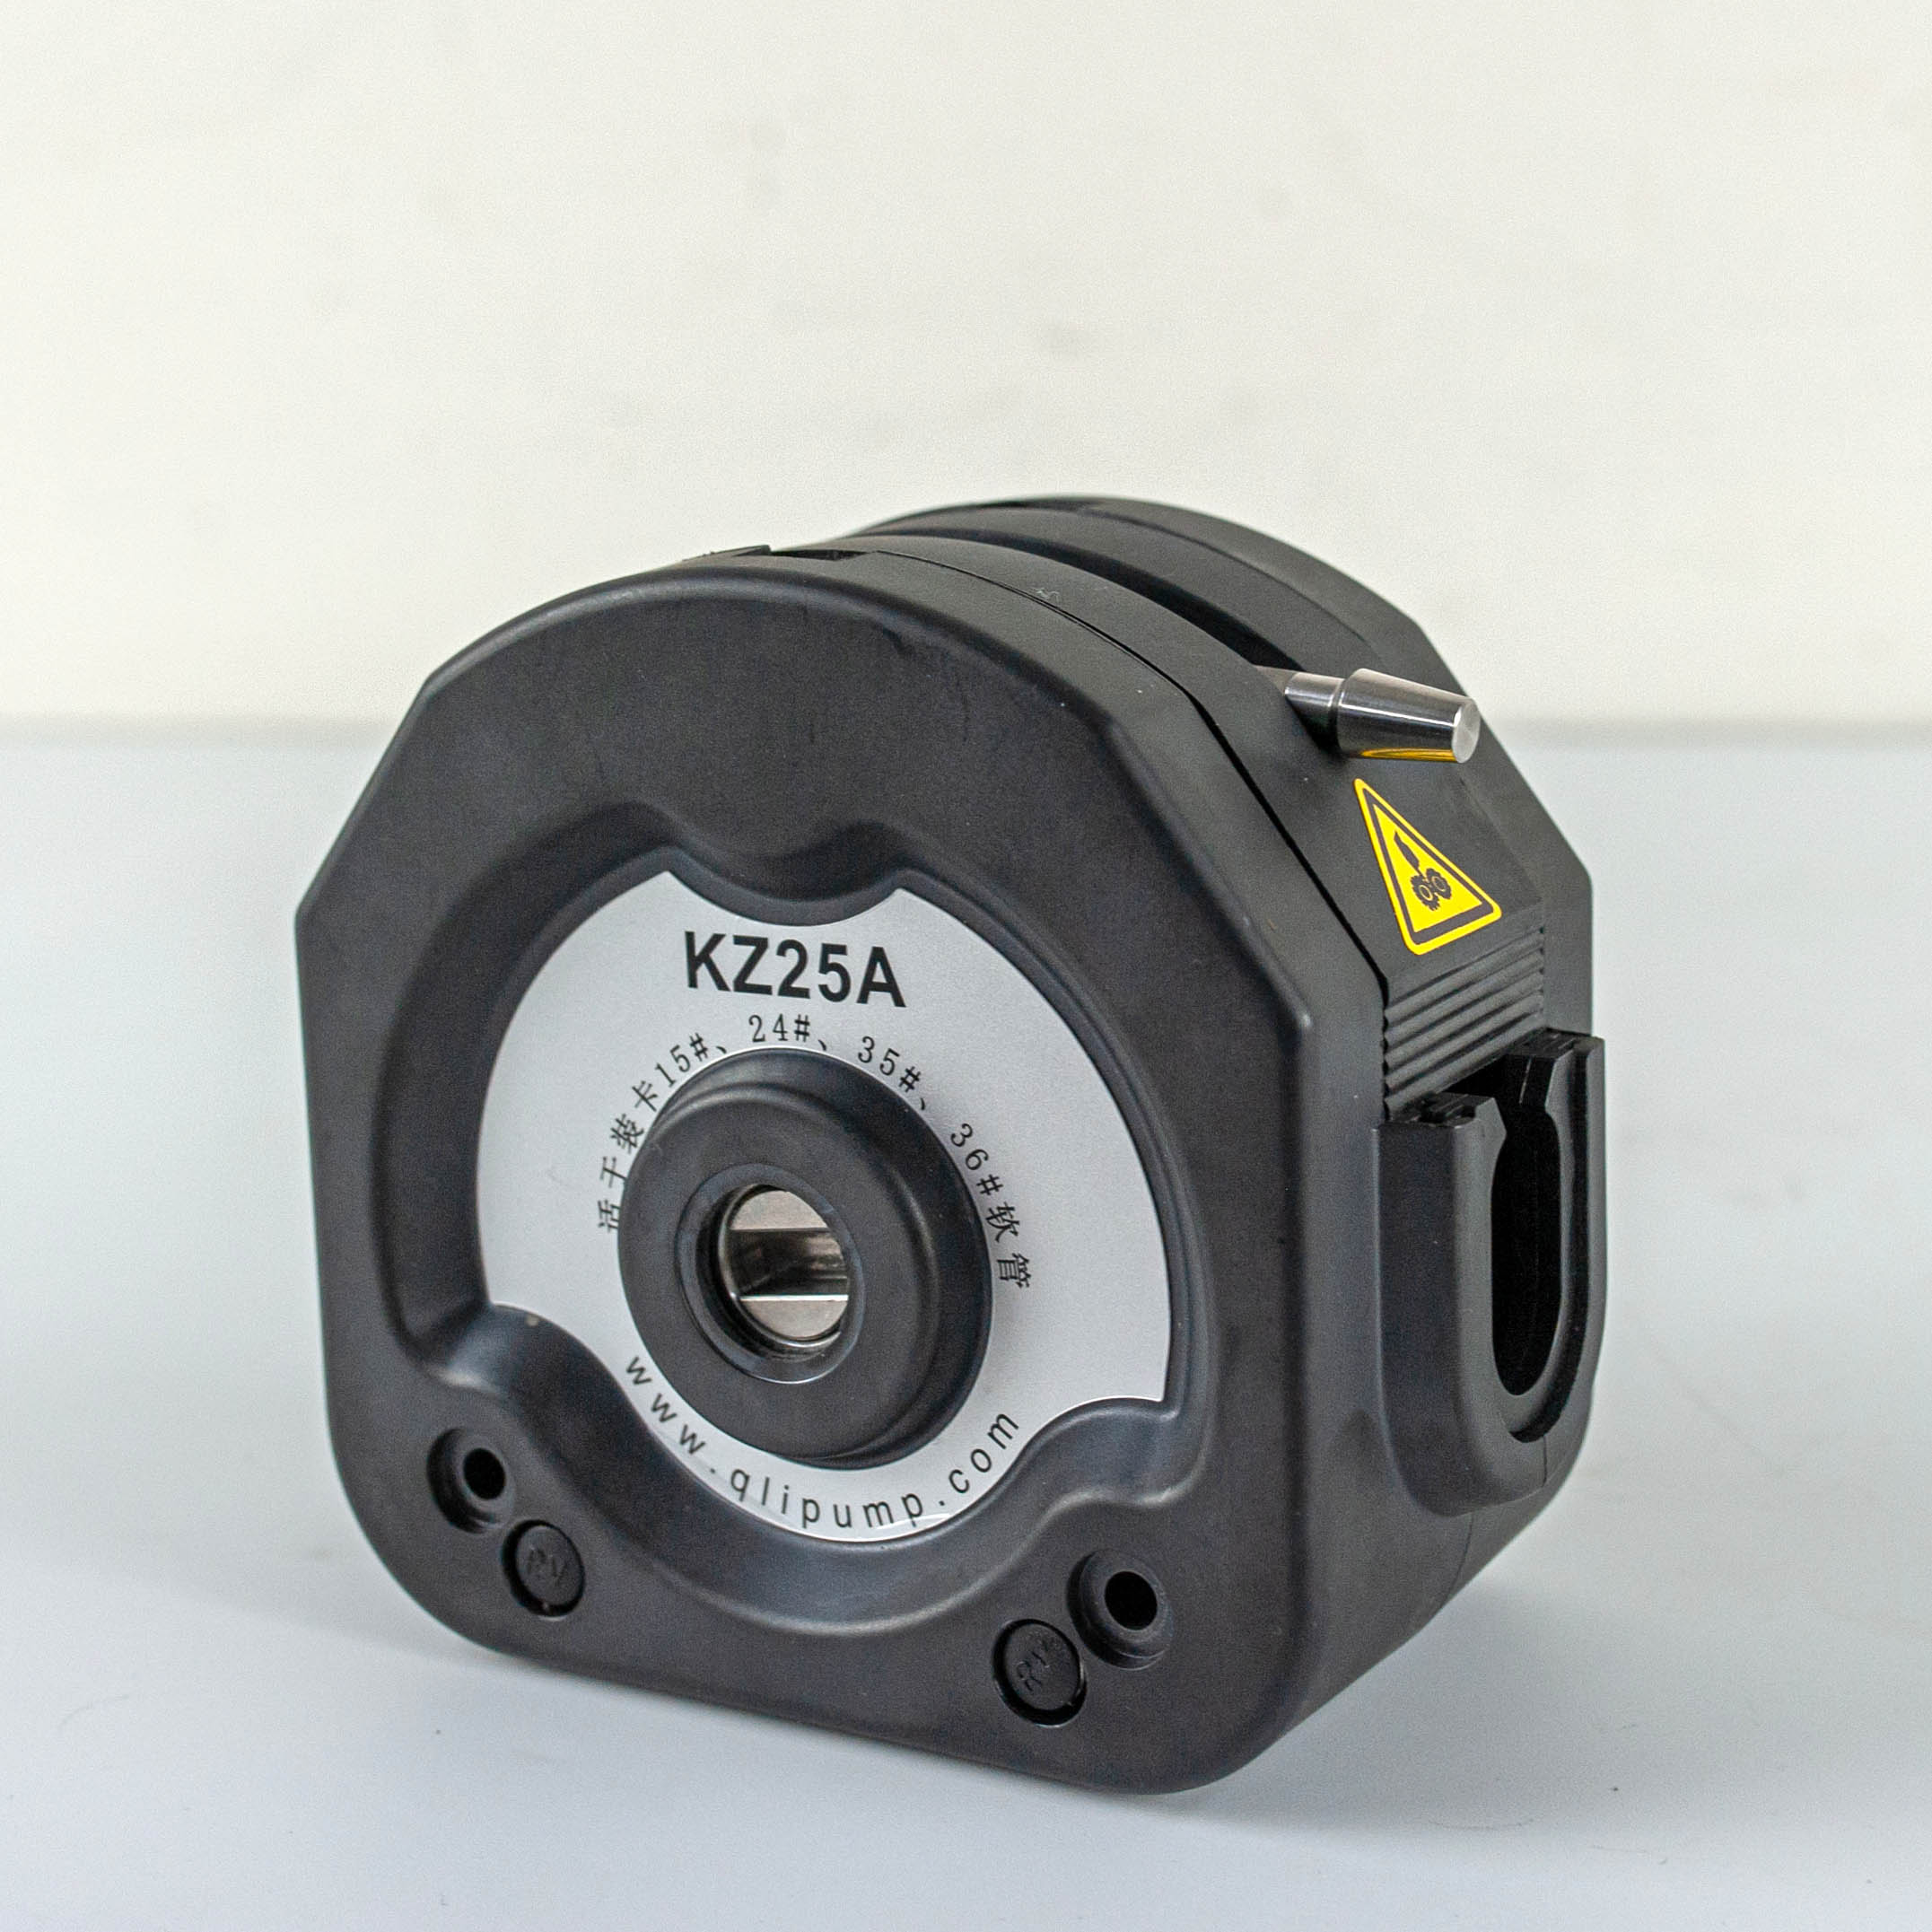 KZ25A 泵頭卡管視頻